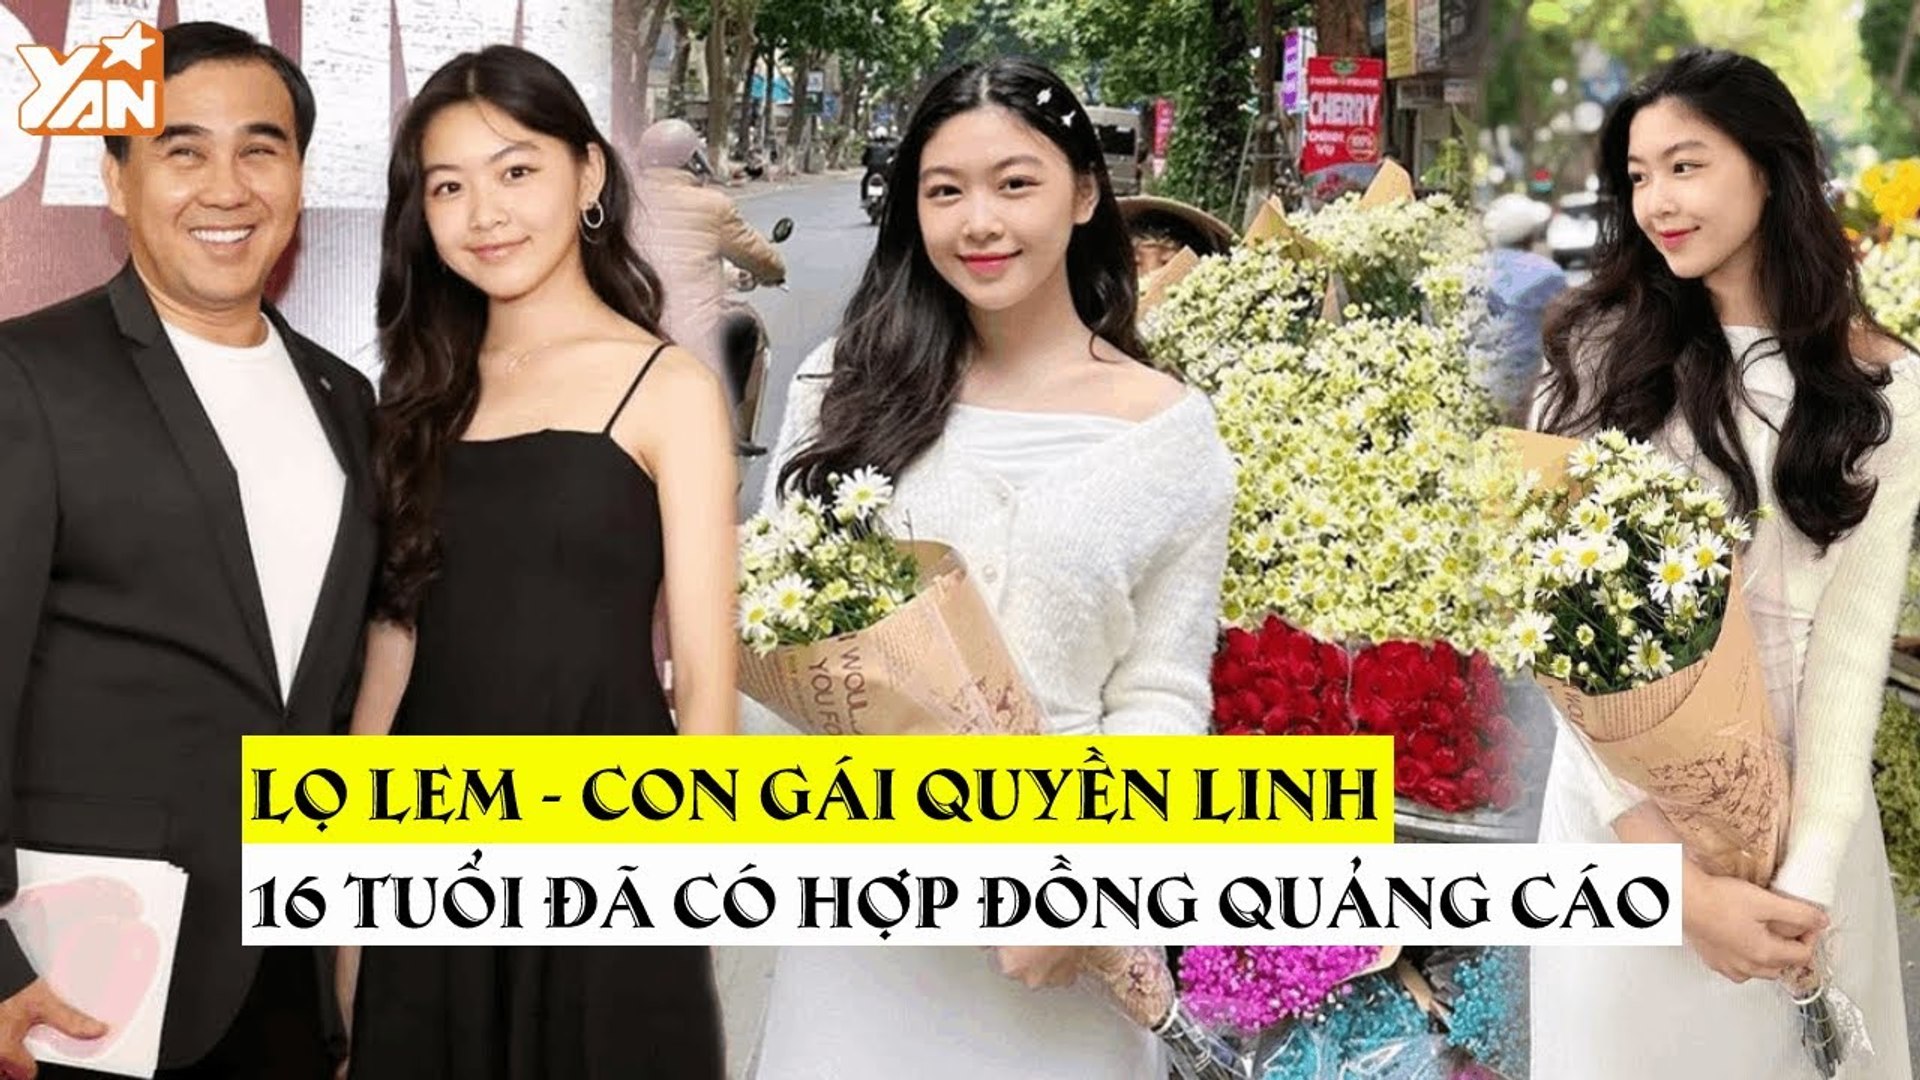 Lọ Lem - Con gái Quyền Linh mới 16 tuổi đã nhận hợp đồng quảng cáo: Nhan  sắc trong veo rạng rỡ - Video Dailymotion